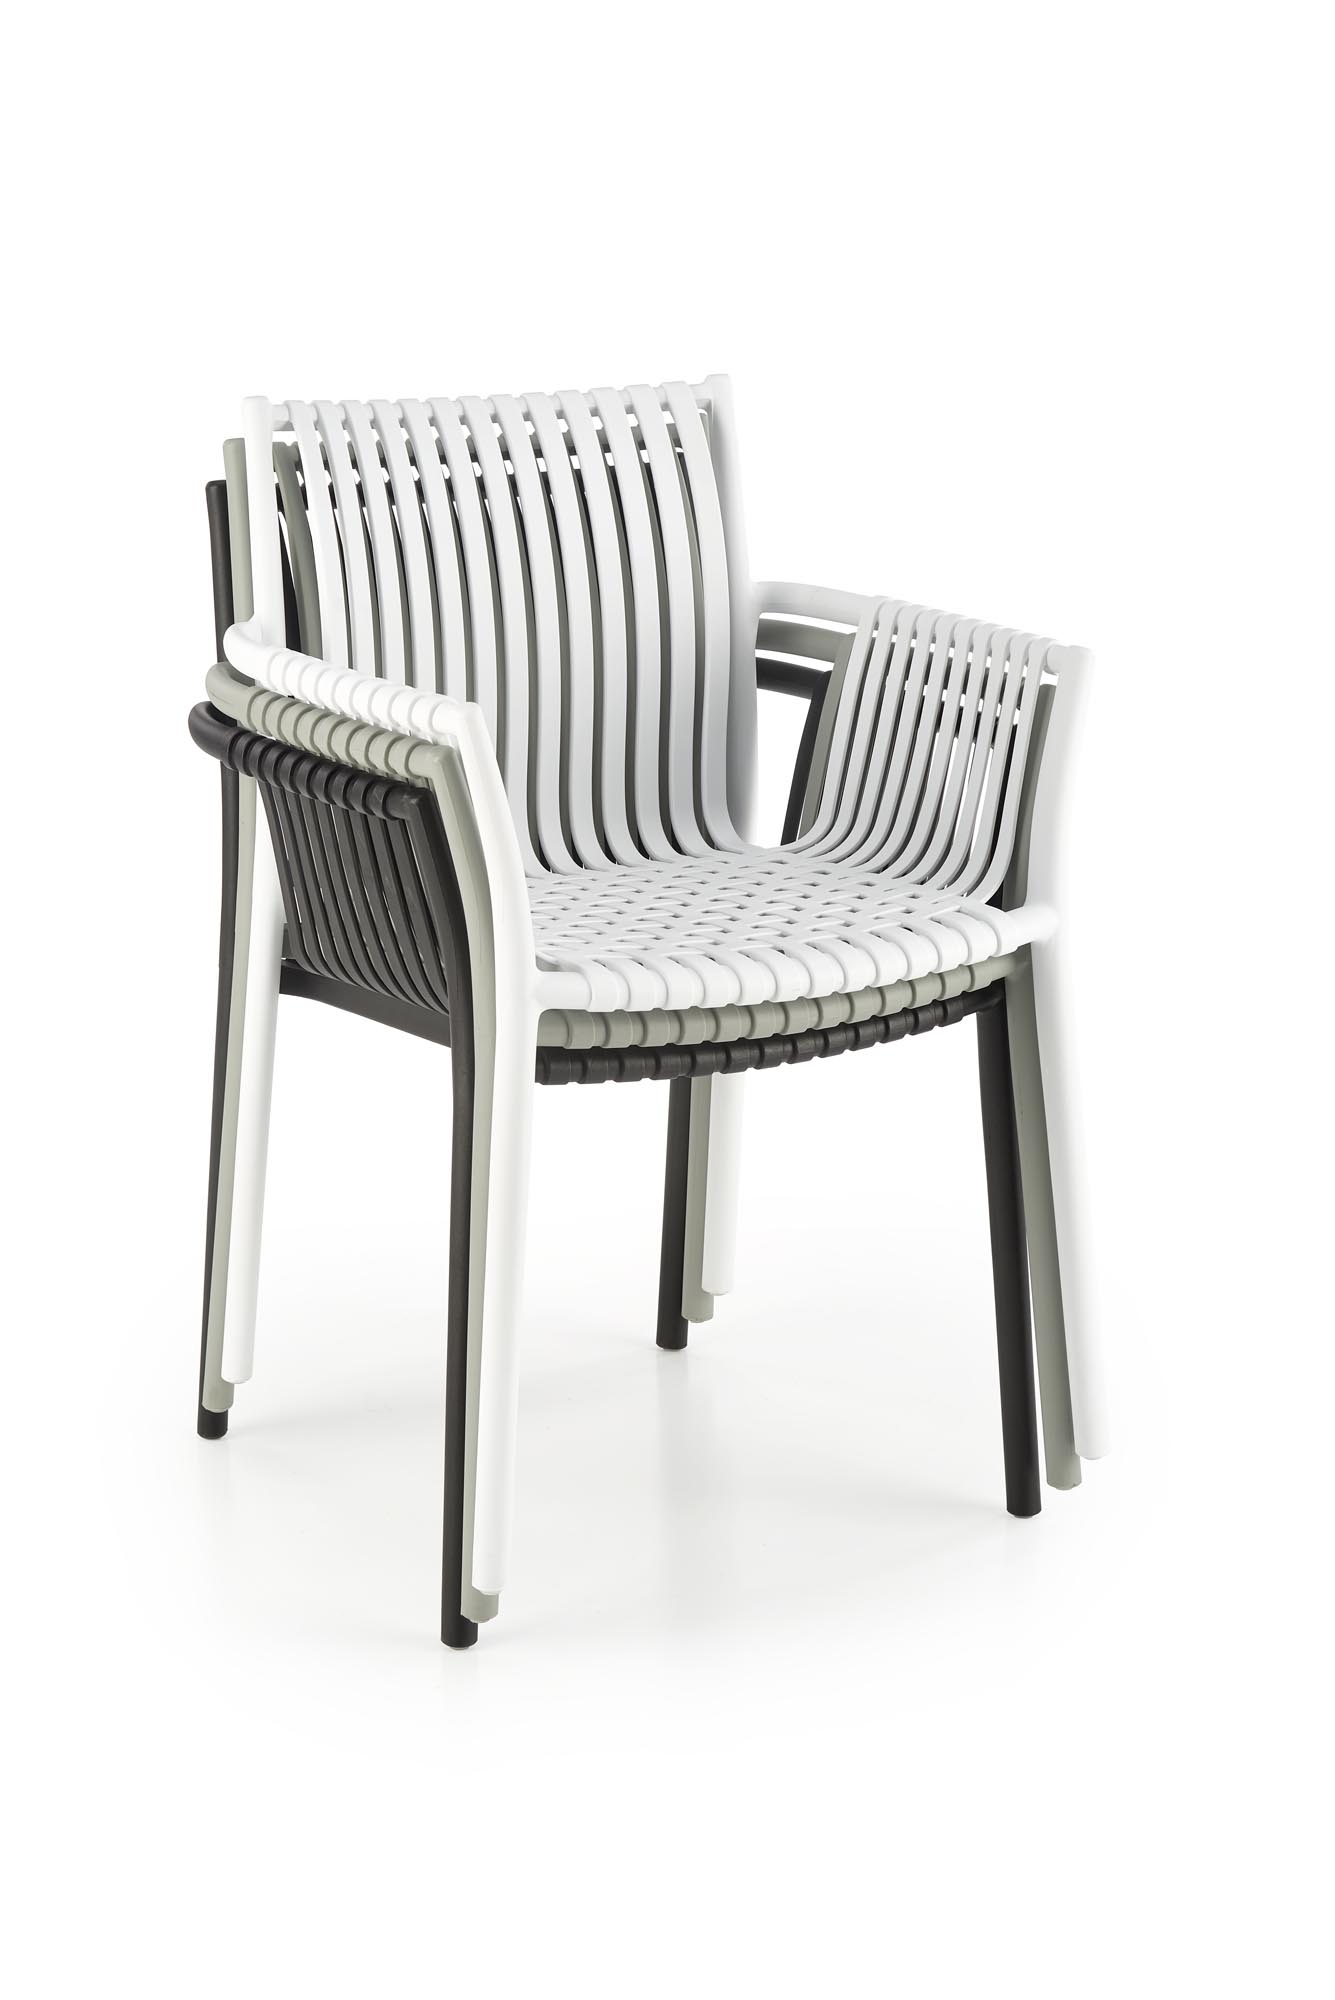 K492 Židle Bílý (1p=4szt) židle z umělé hmoty k492 - Bílý